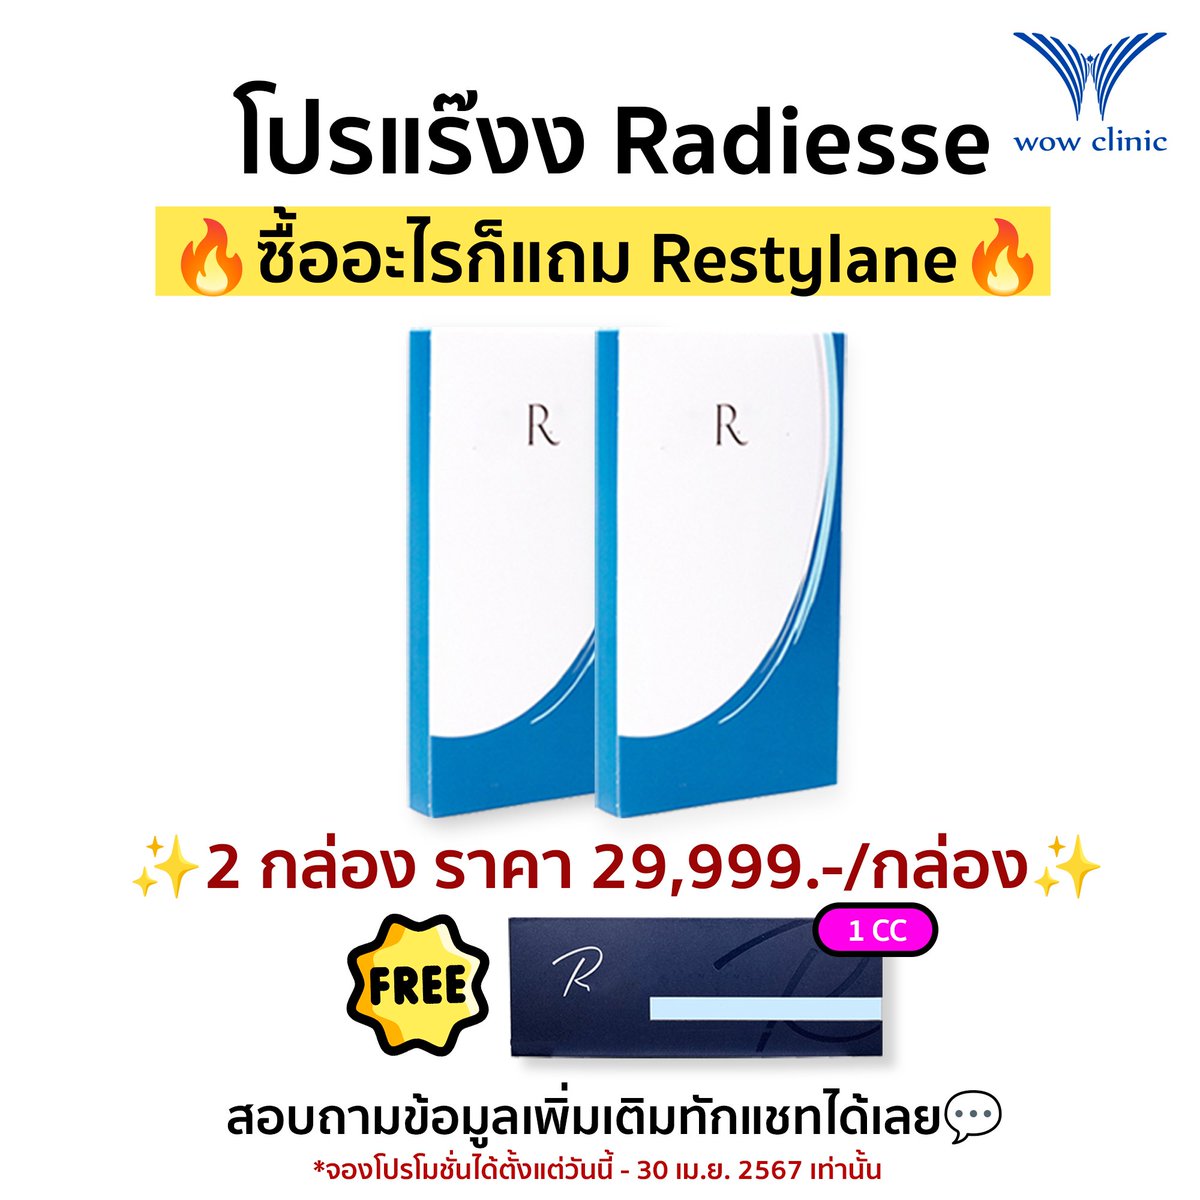 สวย...หล่อ จัดหนักจัดเต็ม🎉
โปรดี ๆ หาที่ไหนไม่ได้อีกแล้ว 
จองก่อน สวยก่อน พลาดแล้วจะหาว่าไม่เตือนน้า💕

🔹Radiesse
1 กล่อง ราคา 35,999.- / กล่อง
2 กล่อง ราคา 29,999.- / กล่อง
✨แถม Restylane 1CC✨

#Radiesse
#WOWClinic